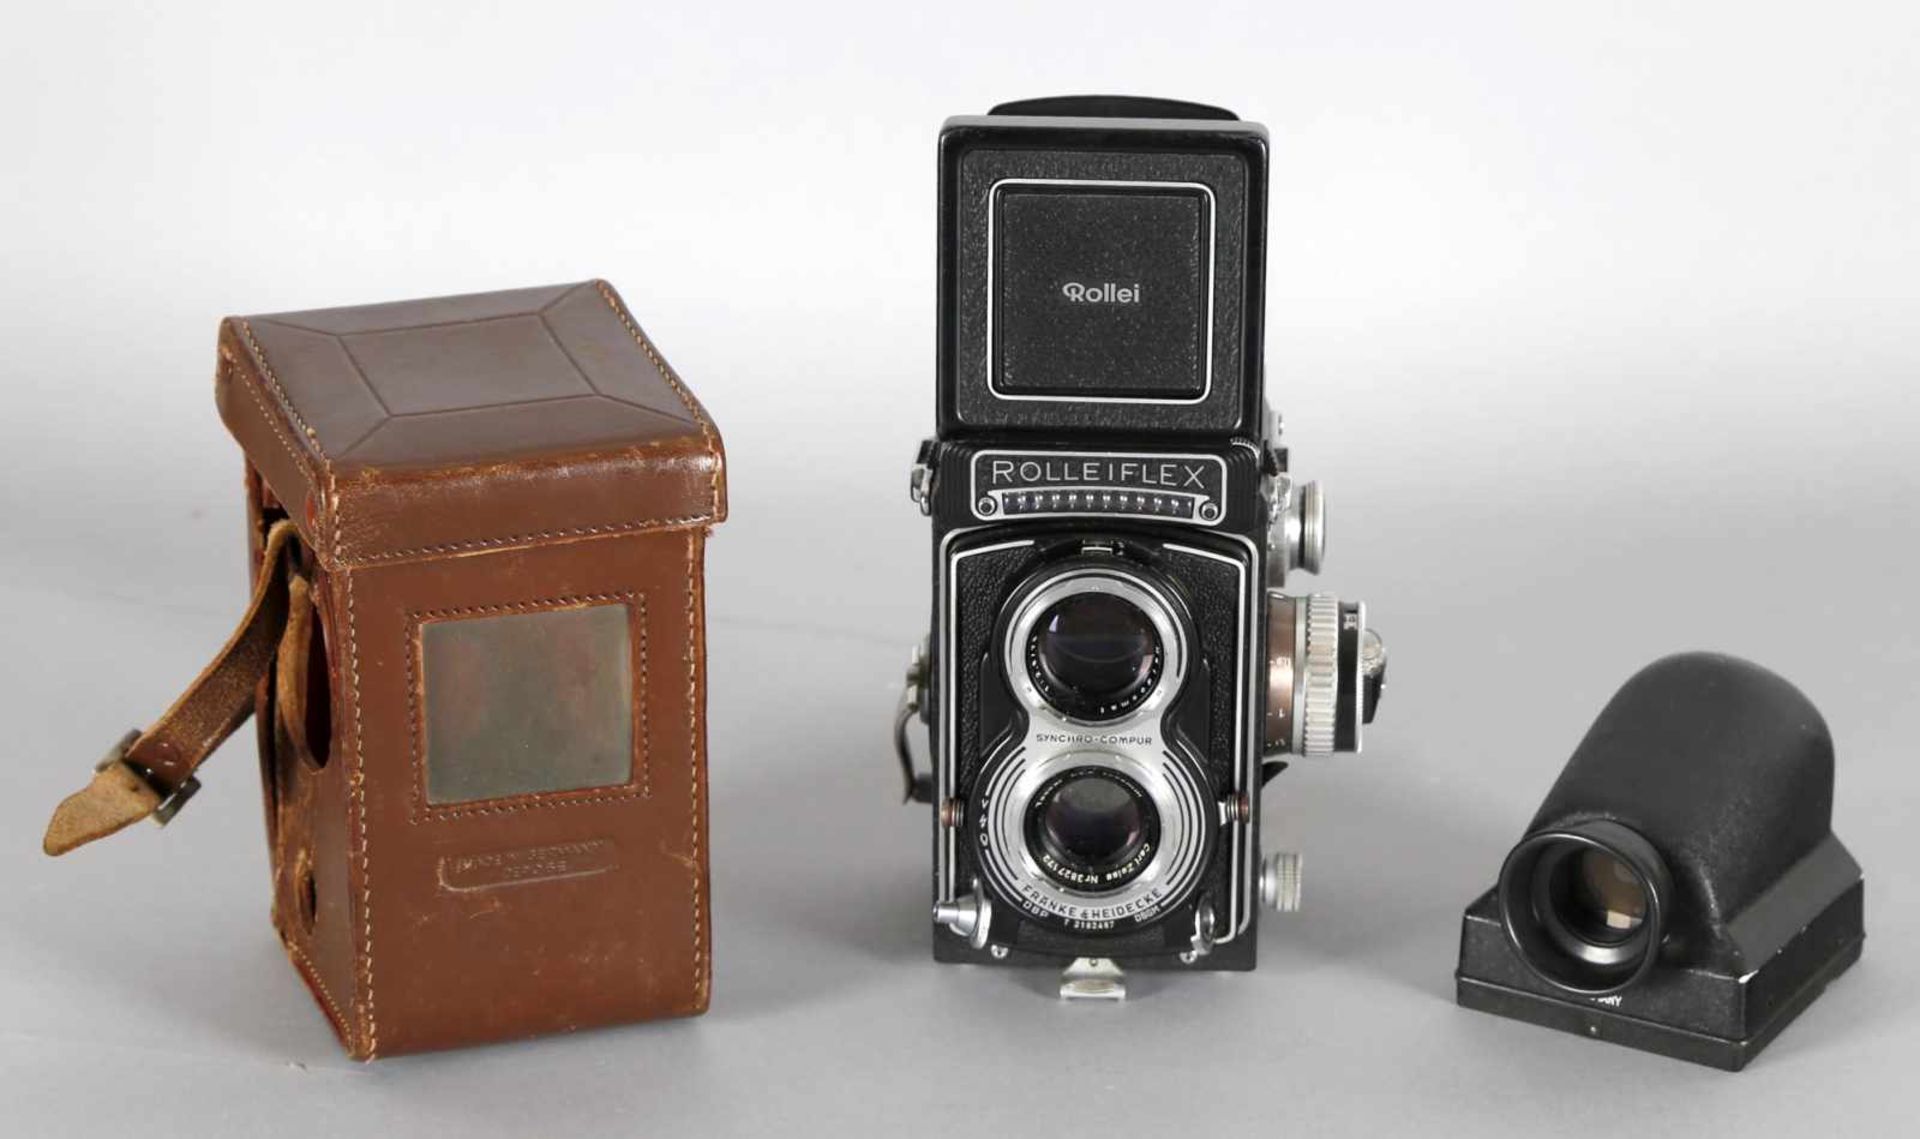 Rolleiflex-T-Kamera mit Prismensucher, Francke und Heidecke, 1961-1966Seriennummer: T 2182487, mit